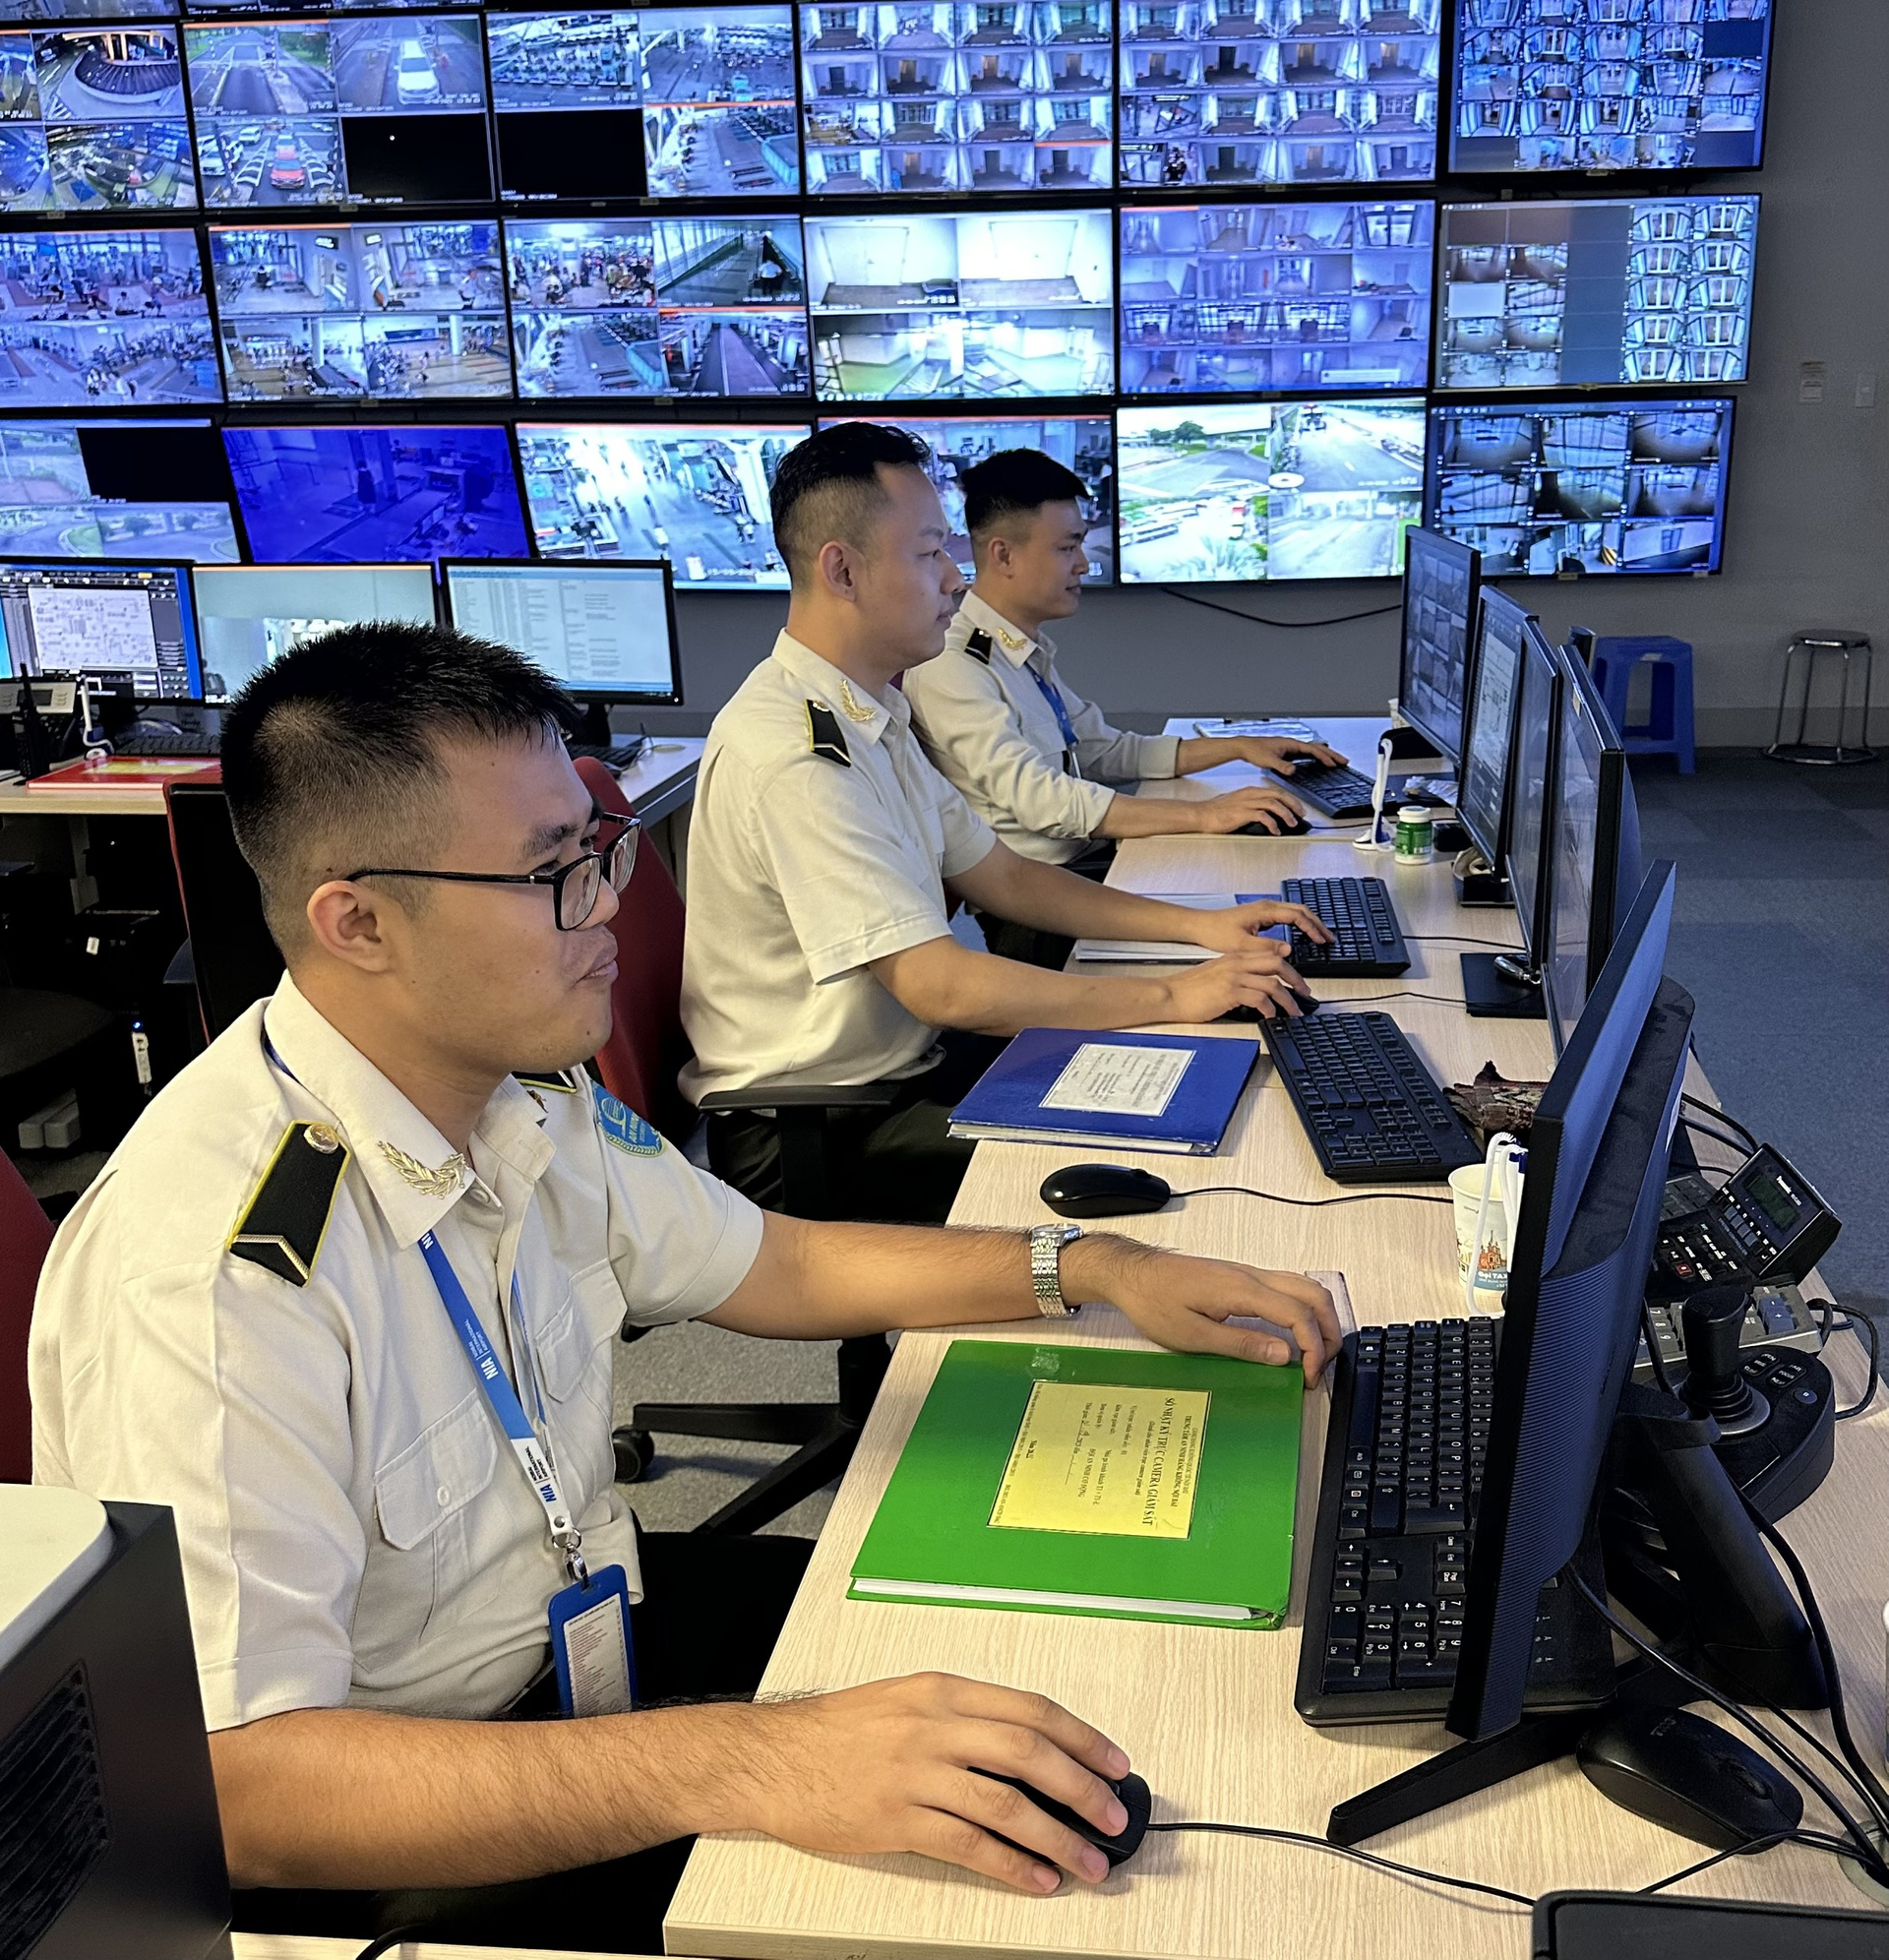 Anh Lê Hoàng Minh và Vũ Đức Nghĩa - Nhân viên Đội An ninh cơ động - Trung tâm An ninh hàng không Nội Bài nhanh chóng tập trung rà soát hình ảnh